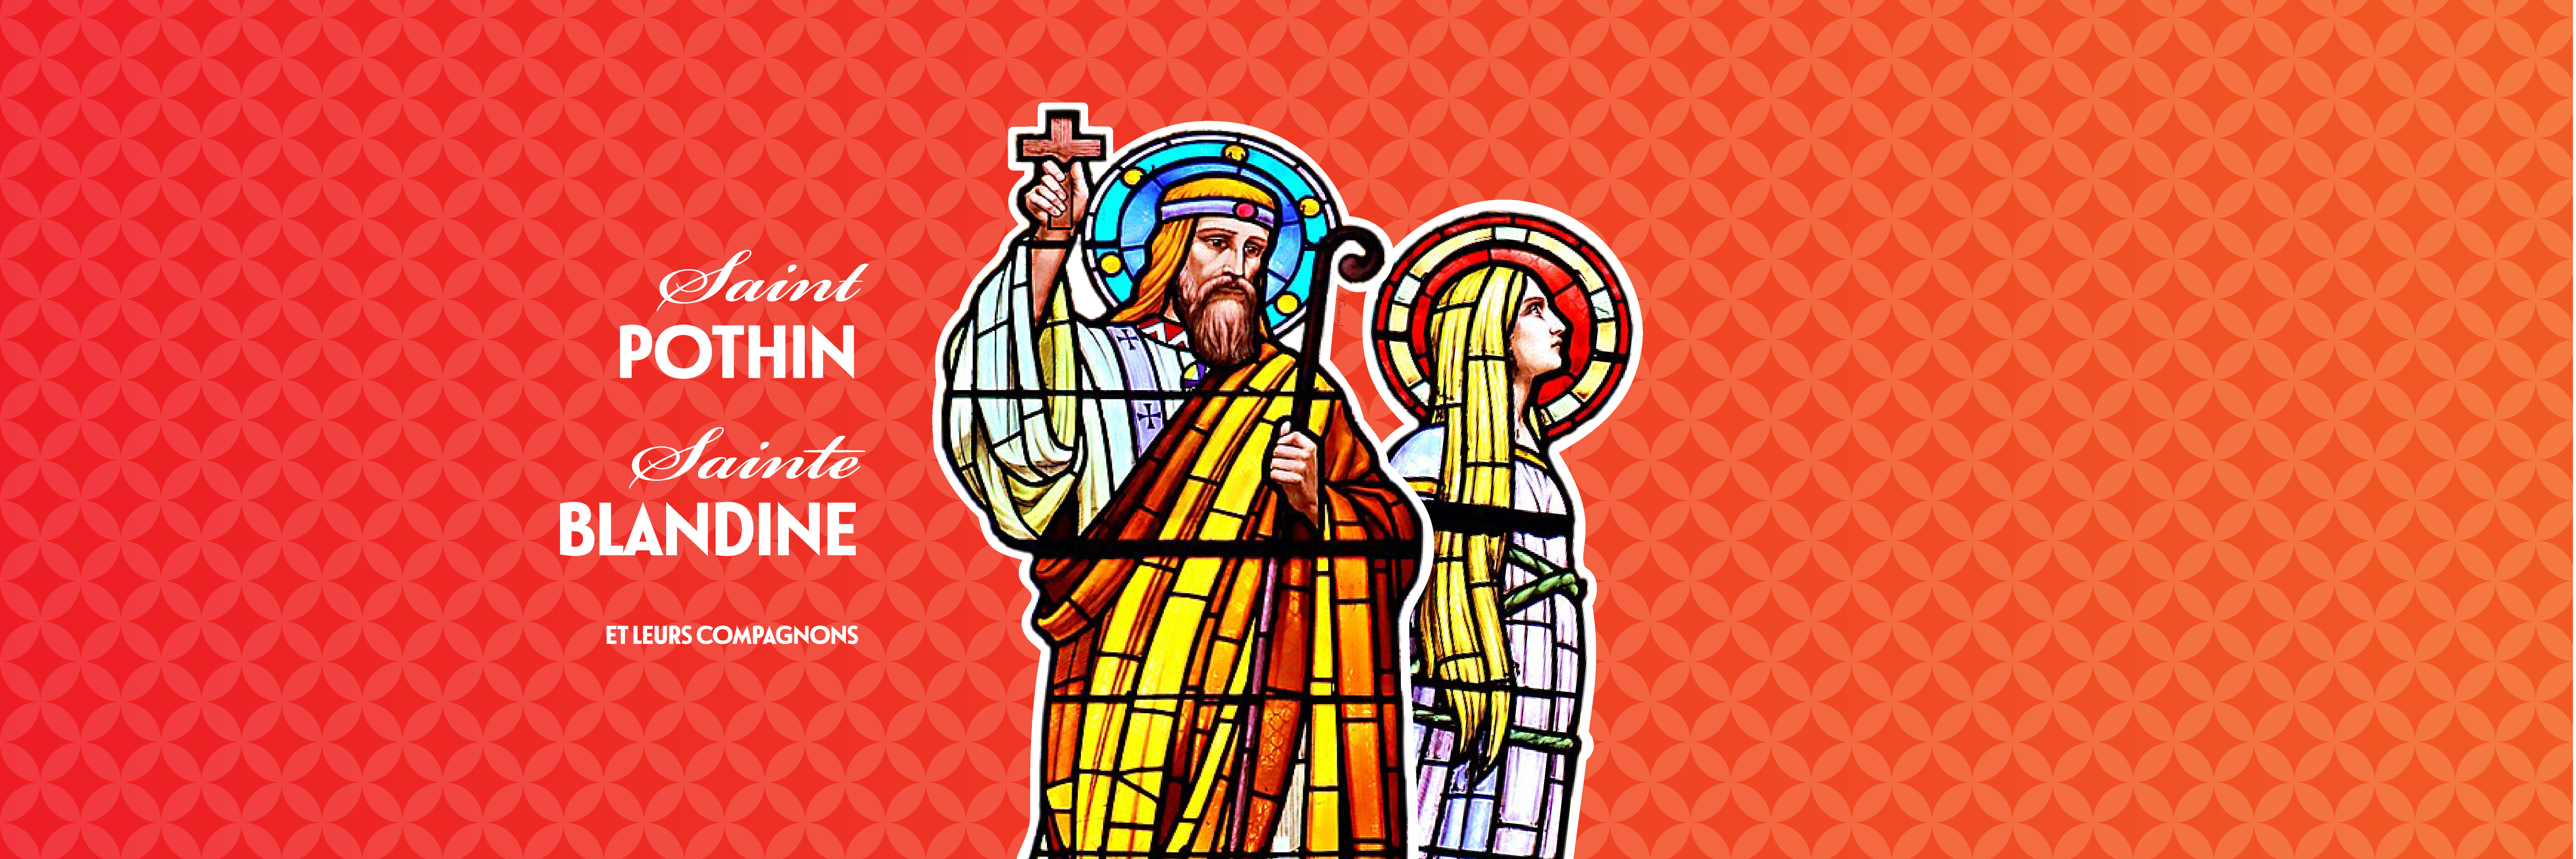 Saint Pothin, sainte Blandine et leurs compagnons